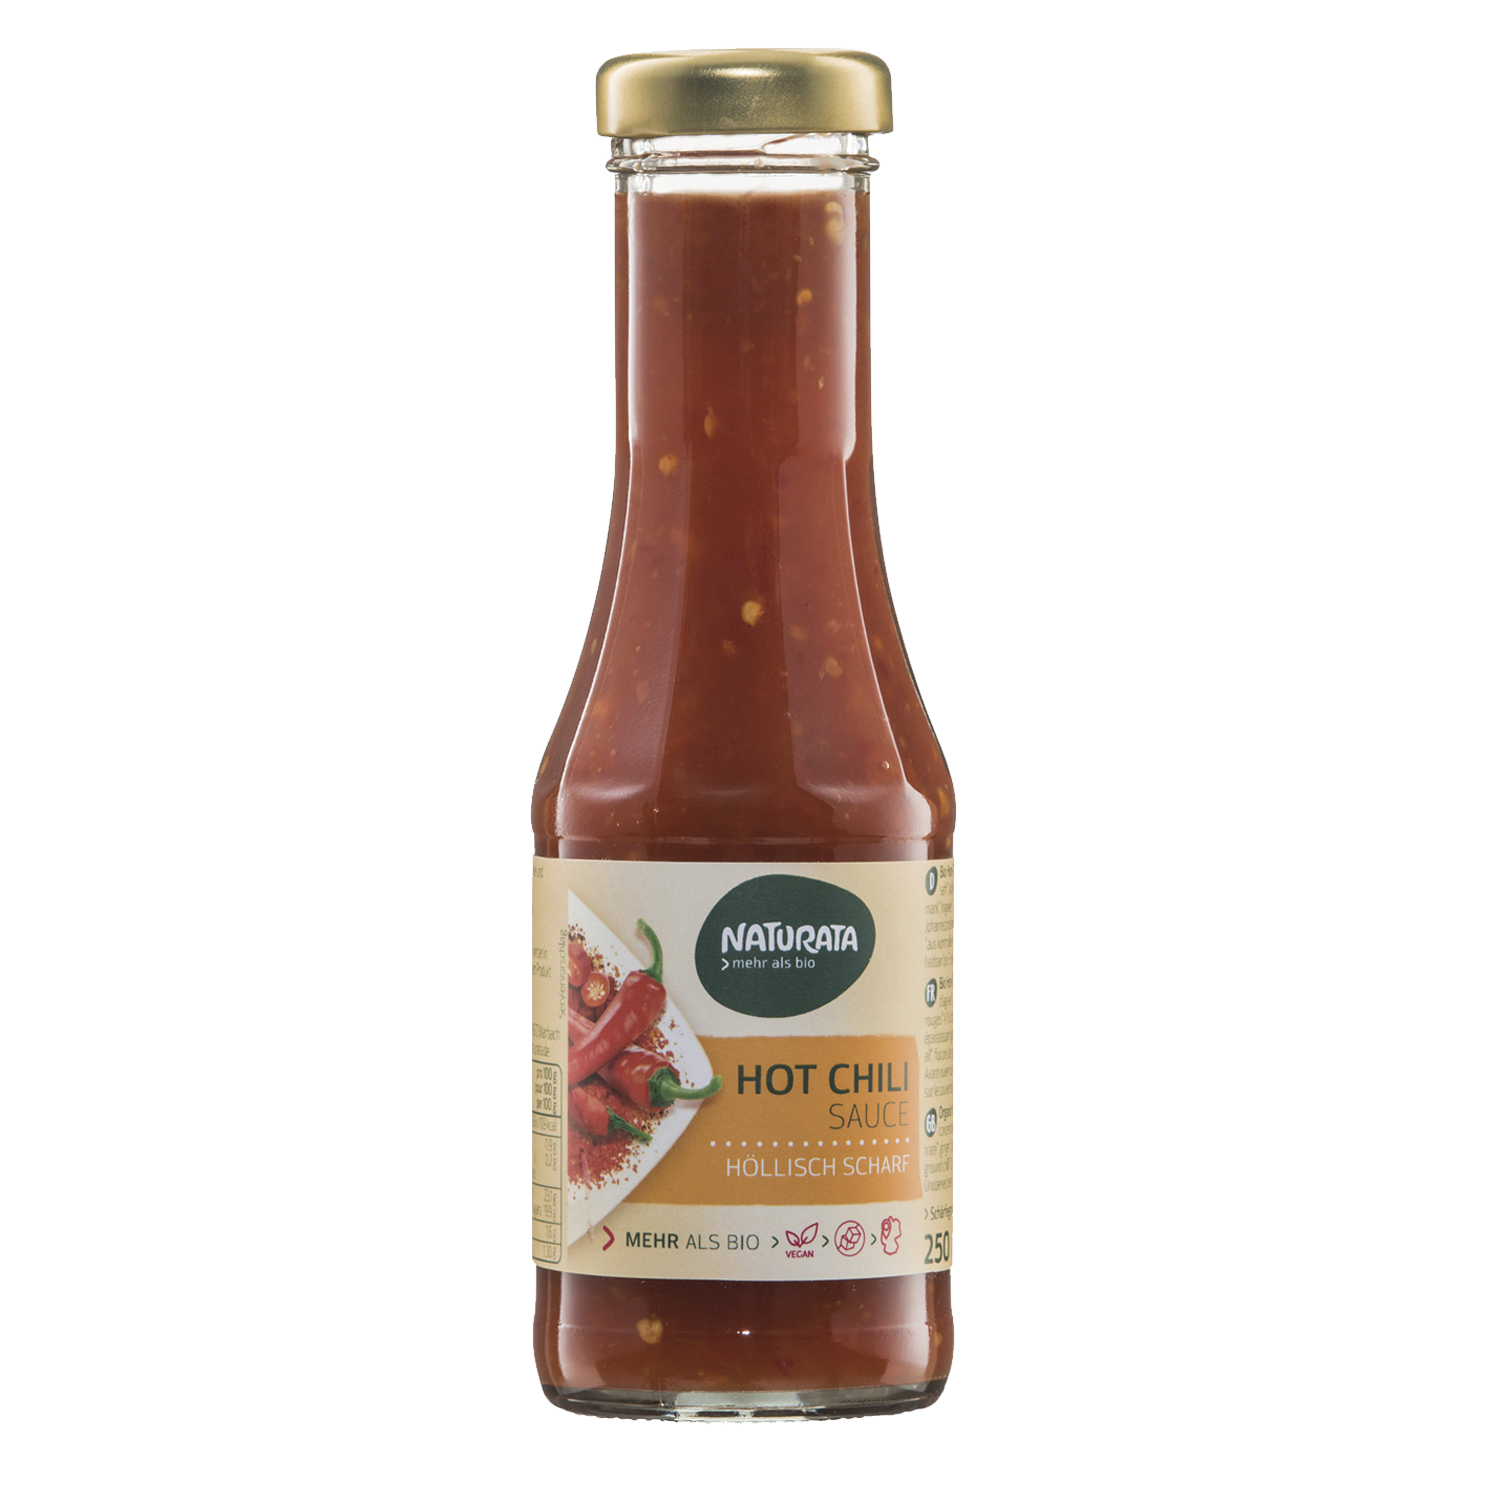 Hot Chili Sauce, 250 ml